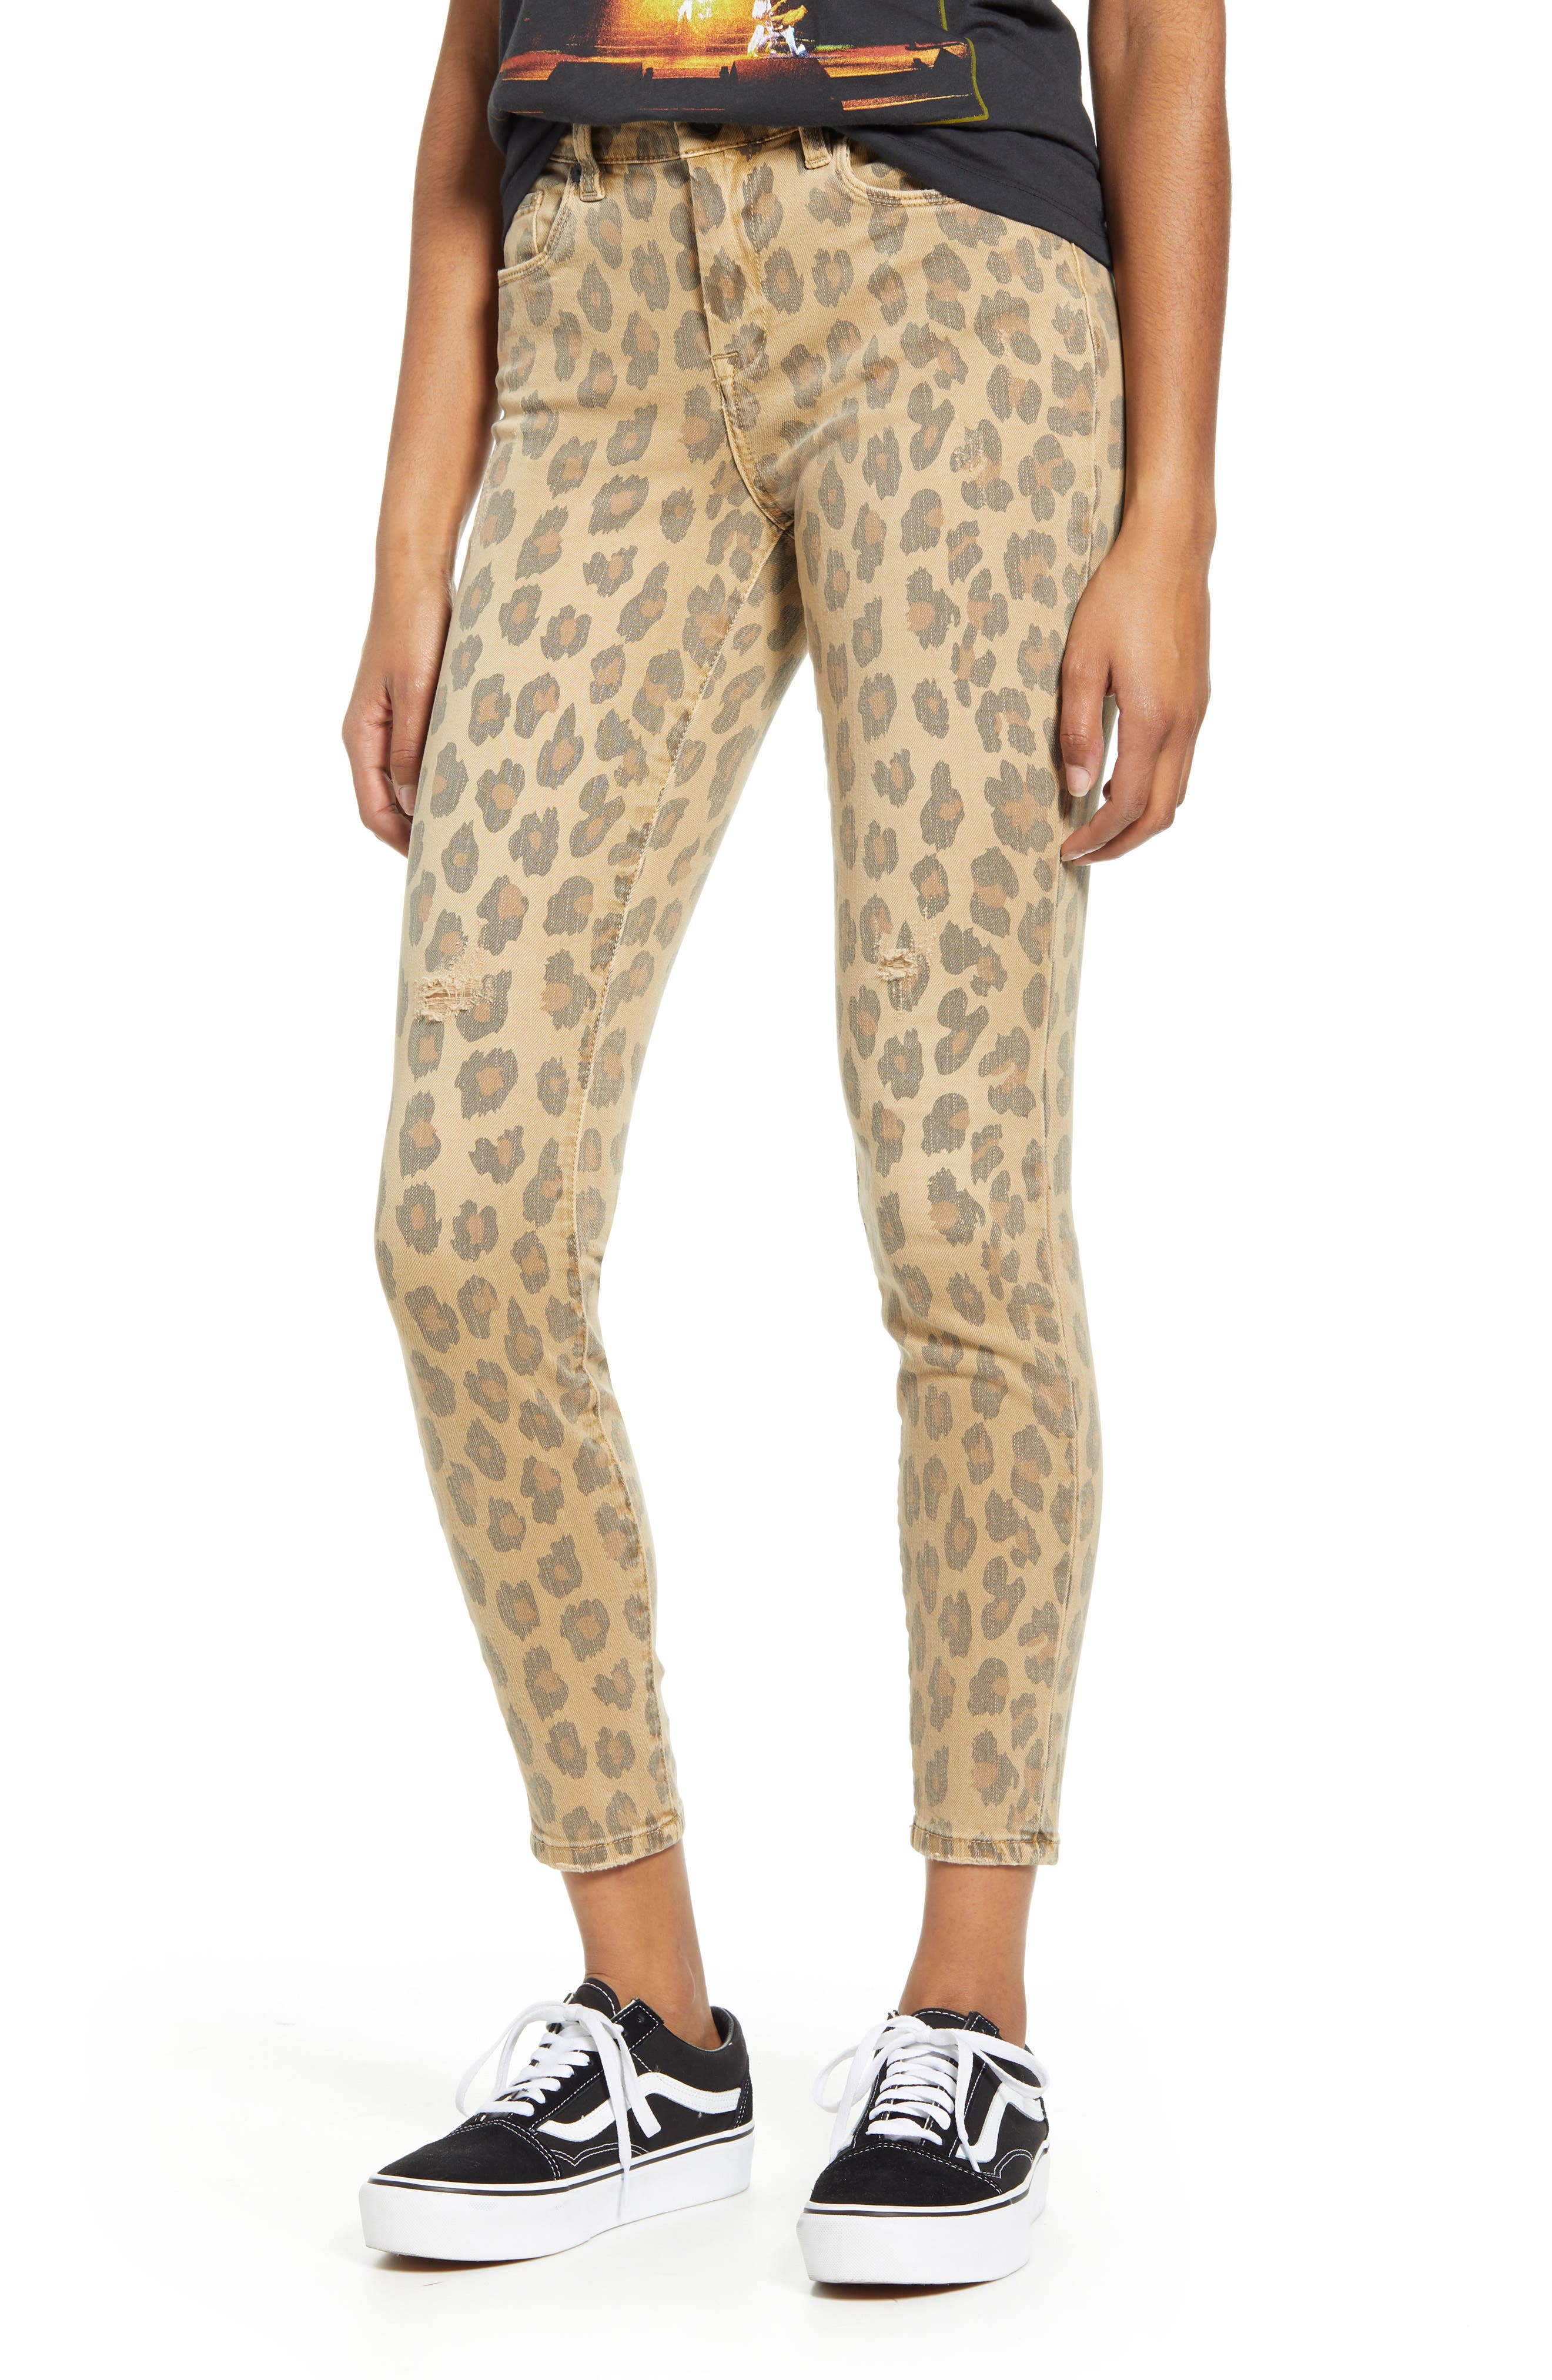 blanknyc leopard jeans